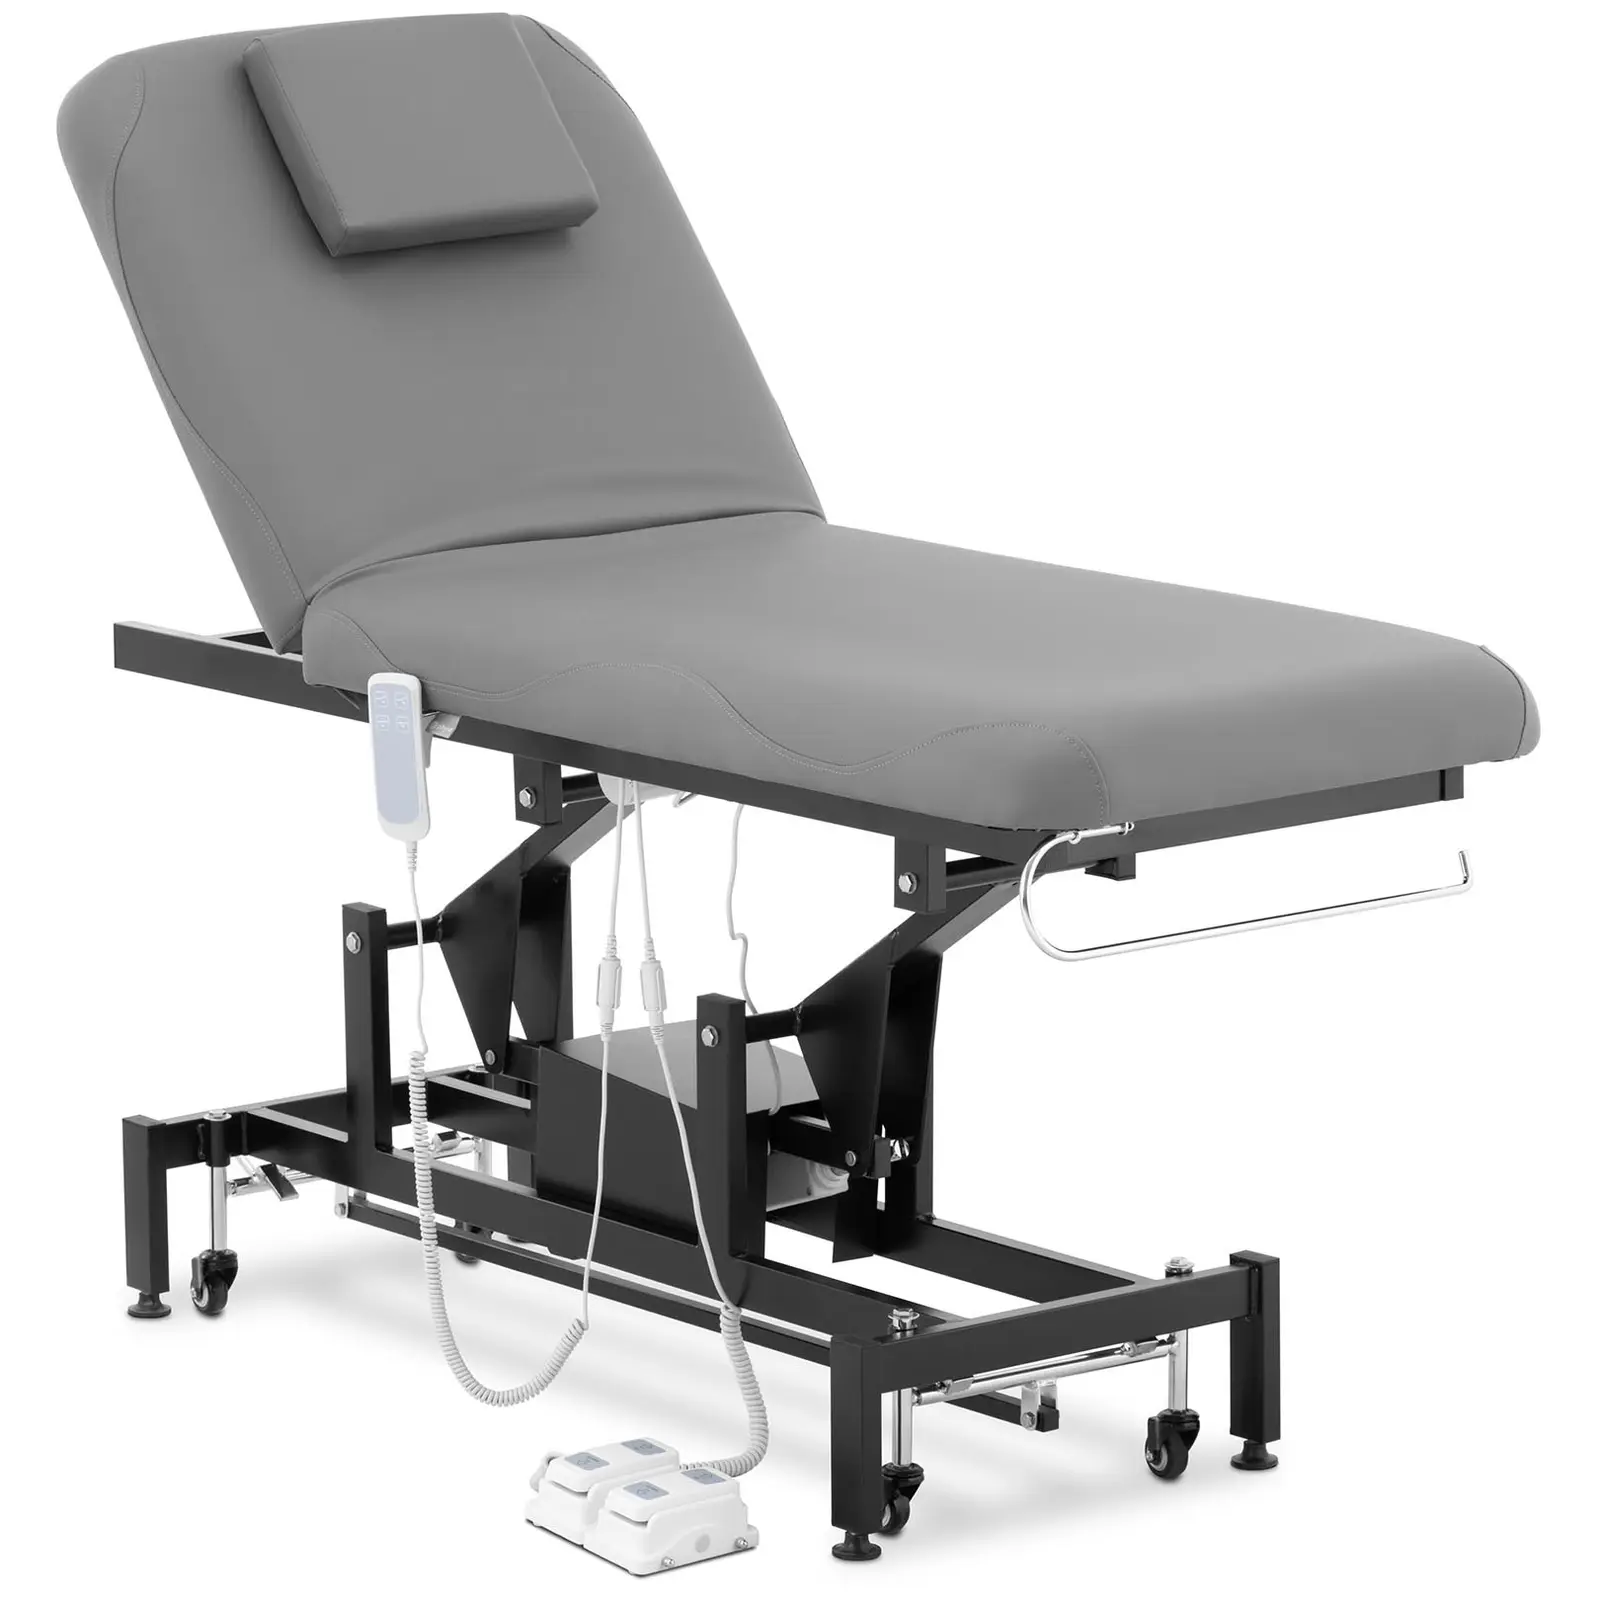 physa table de massage électrique - 2 moteurs - 200 kg - noir, gris